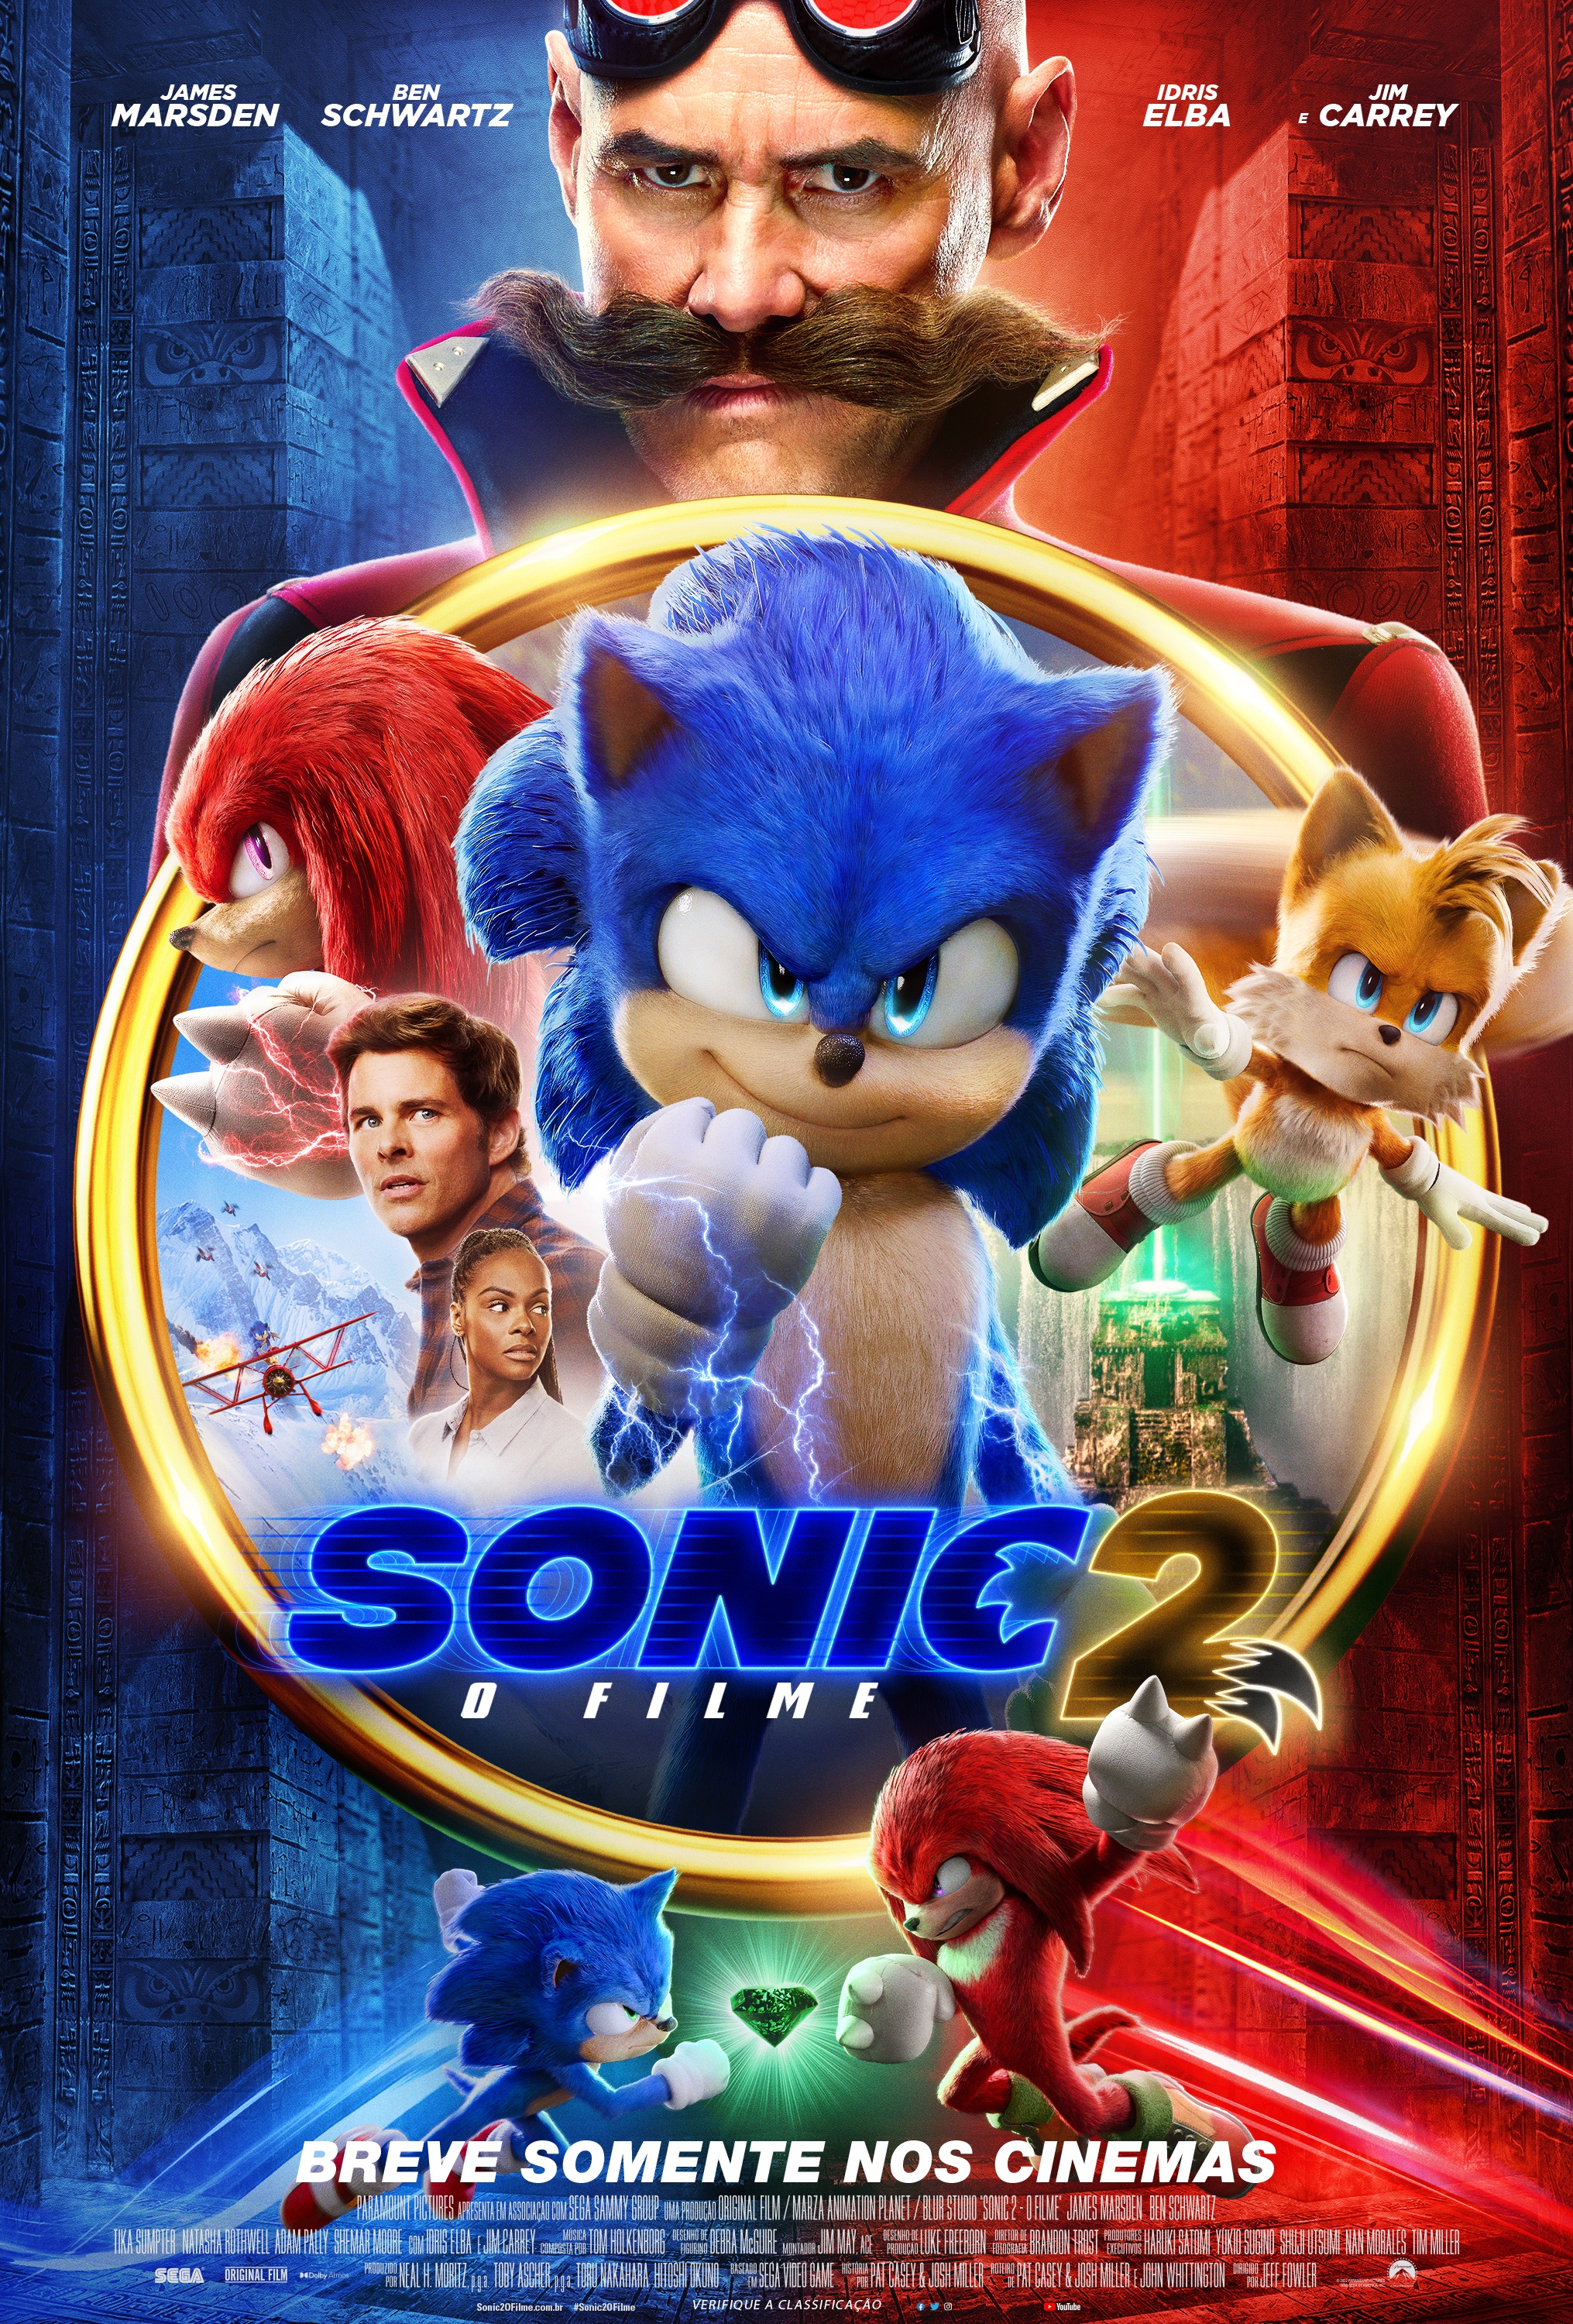 Sonic the Hedgehog 2 gerou US$ 25,5 milhões em seu final de semana internacional